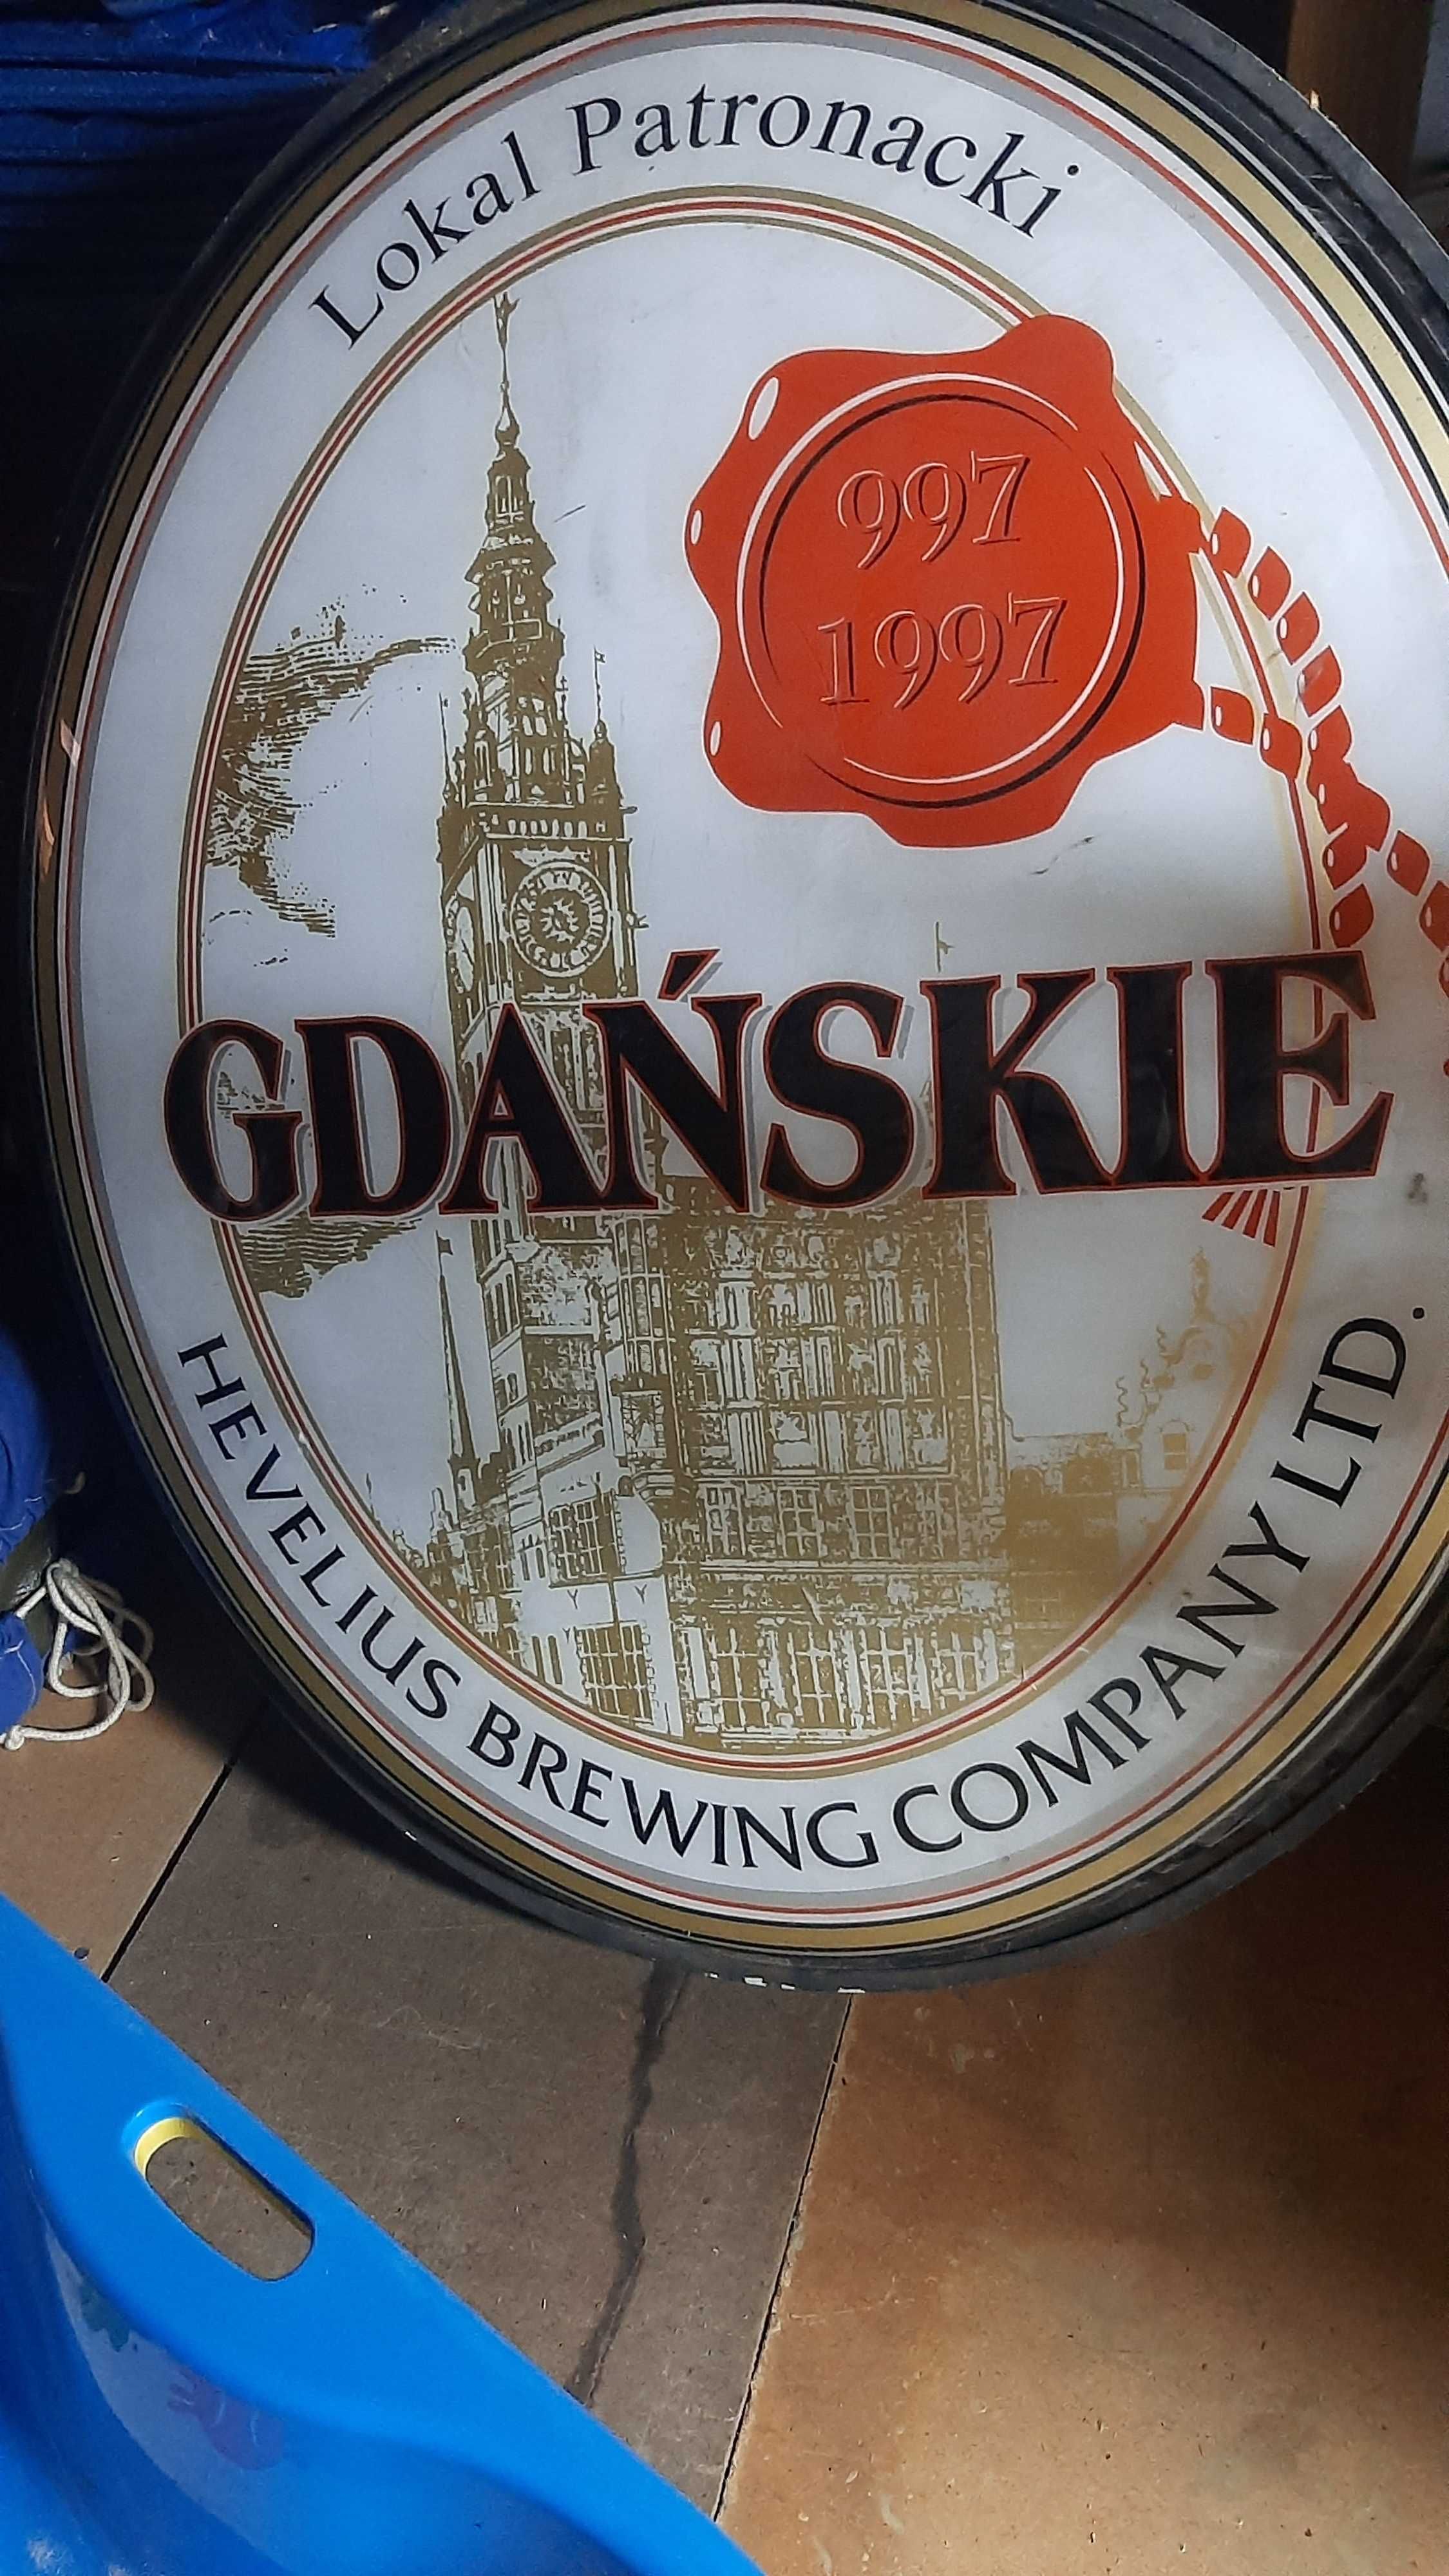 Neon reklamowy piwo Gdańskie